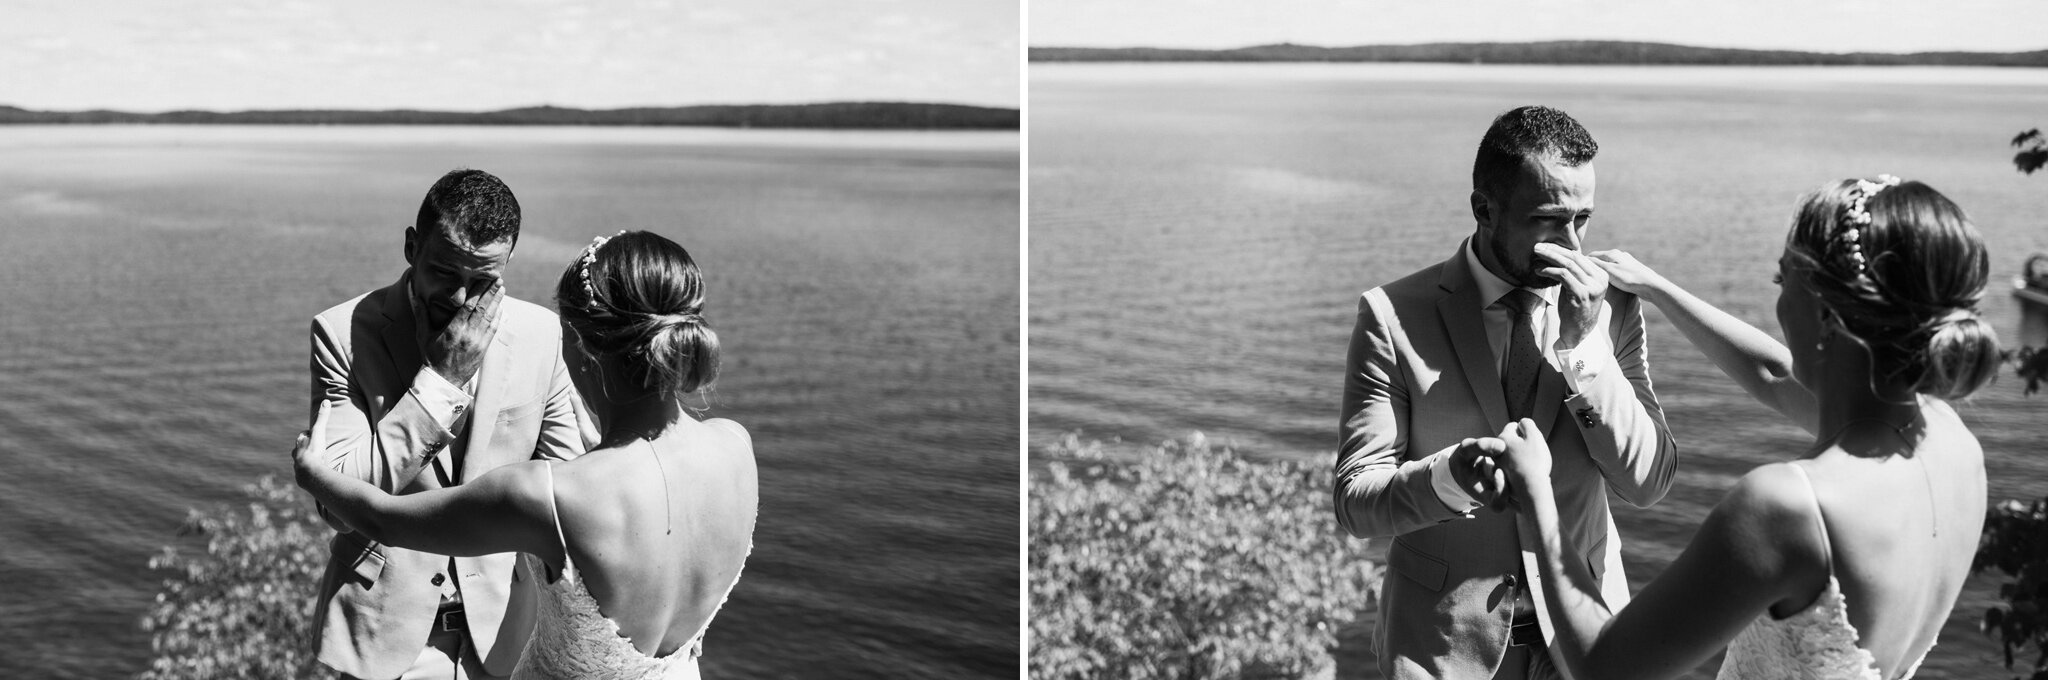 641-emotional-first-look-by-the-lake-bride-groom-outdoors-wedding-toronto-ontario.jpg